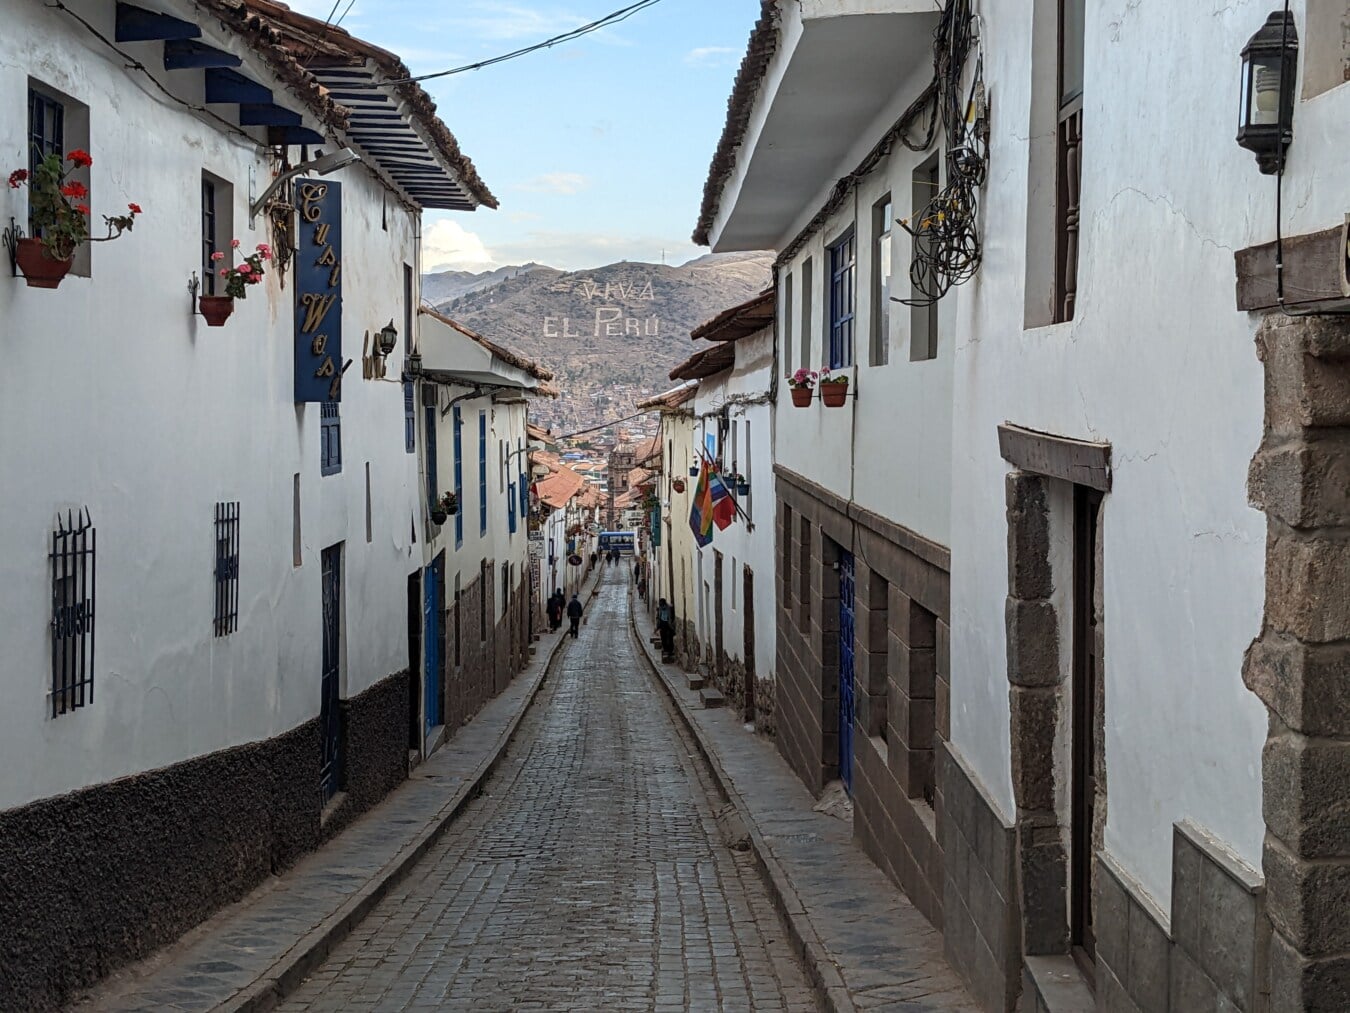 Störtlopp, gata, smala, Peru, arkitektonisk stil, traditionella, trottoar, väg, kullersten, hus